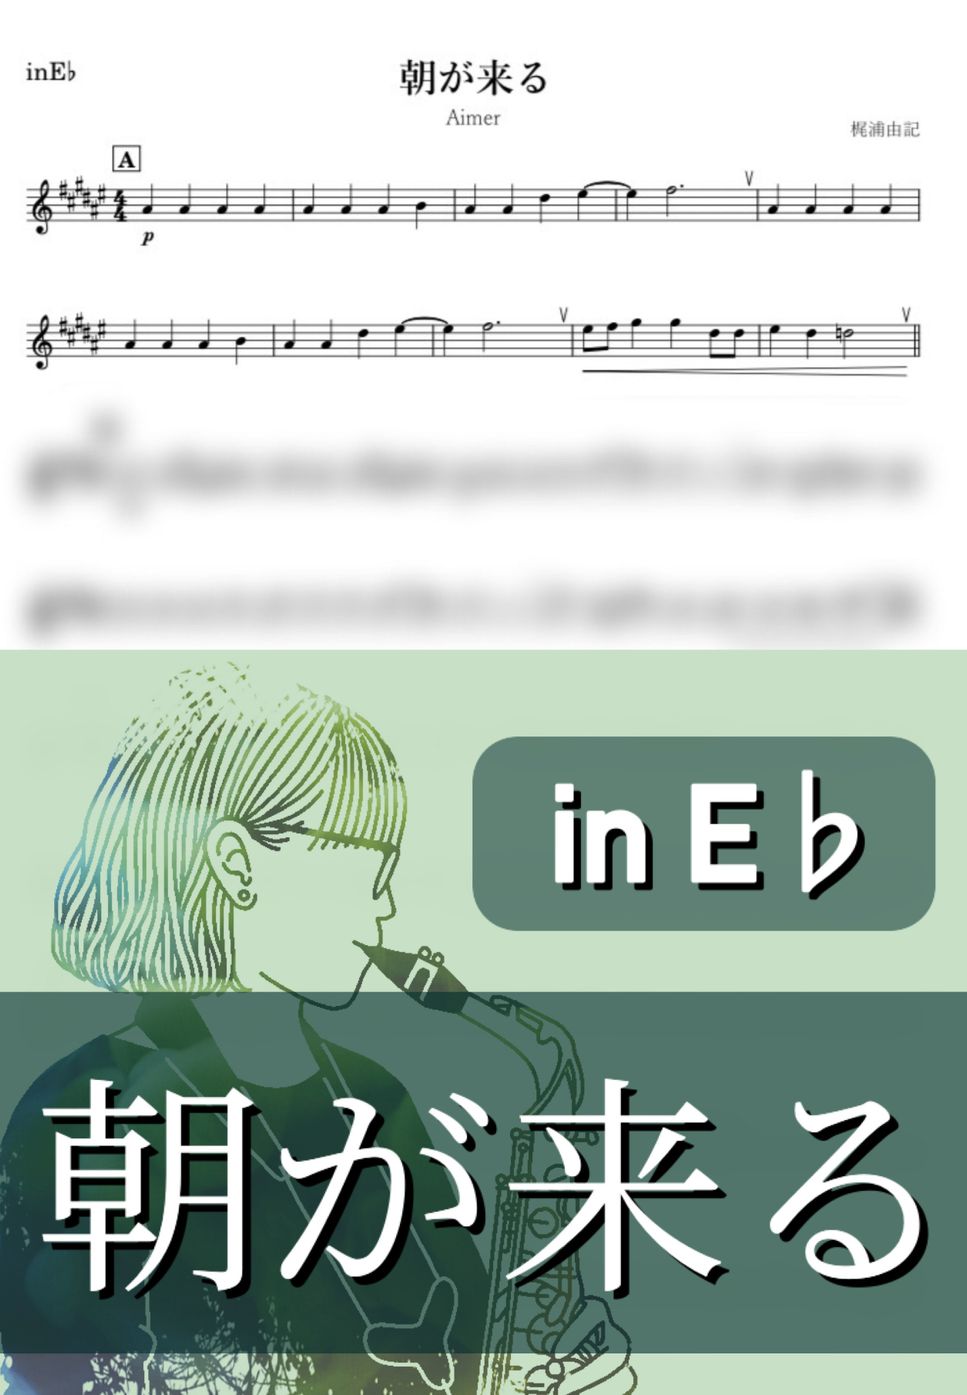 Aimer - 【鬼滅の刃】朝が来る (E♭) by kanamusic